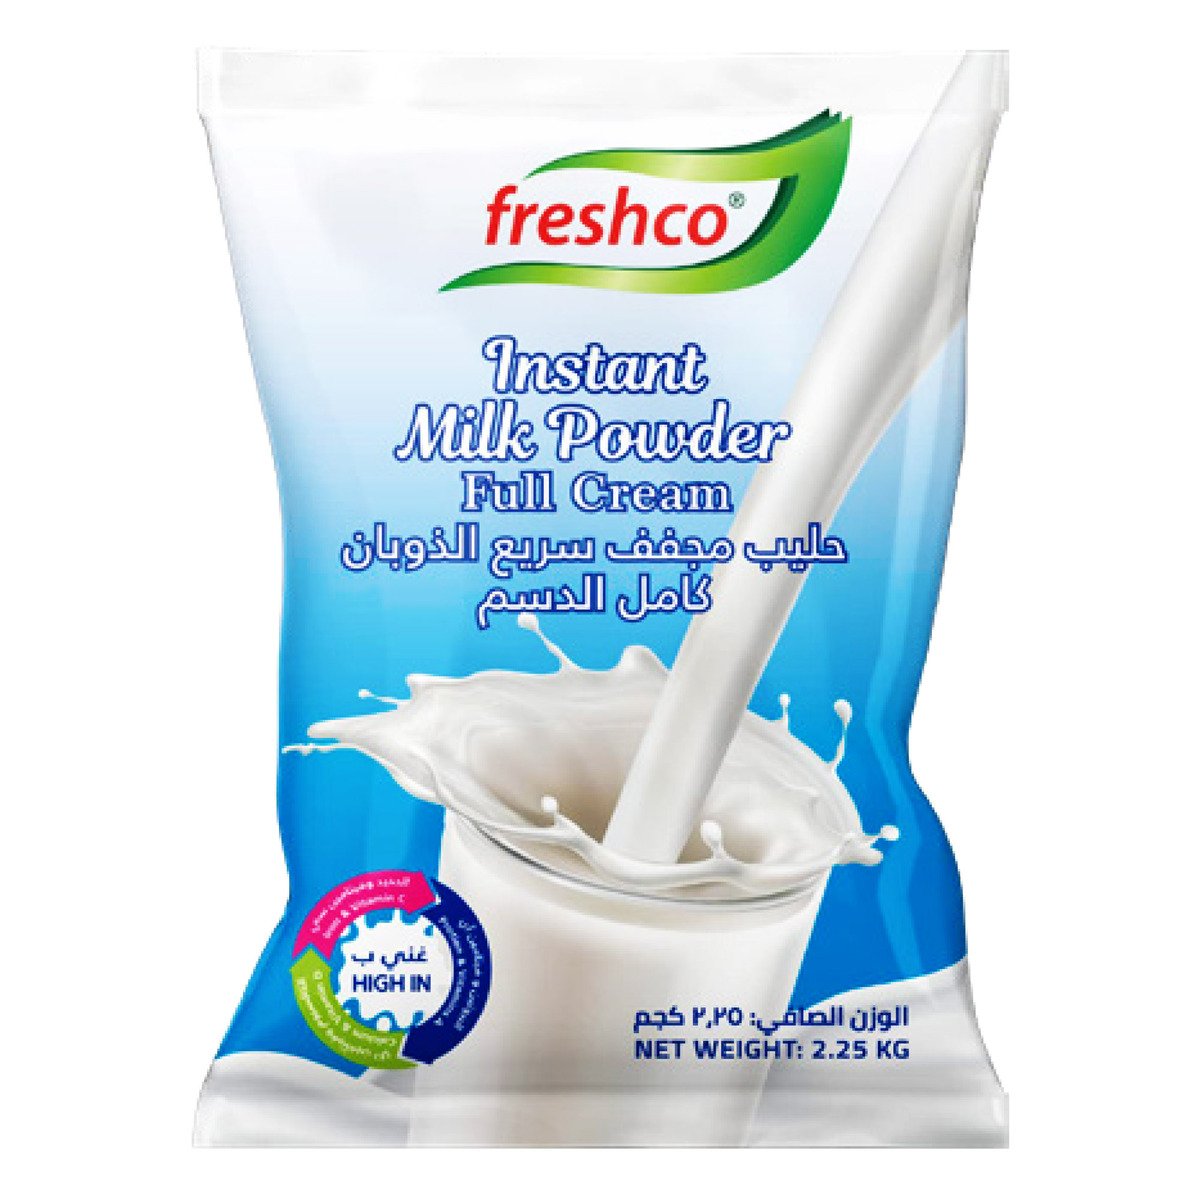 Freshco Instant Milk Powder Full Cream 2.25kg